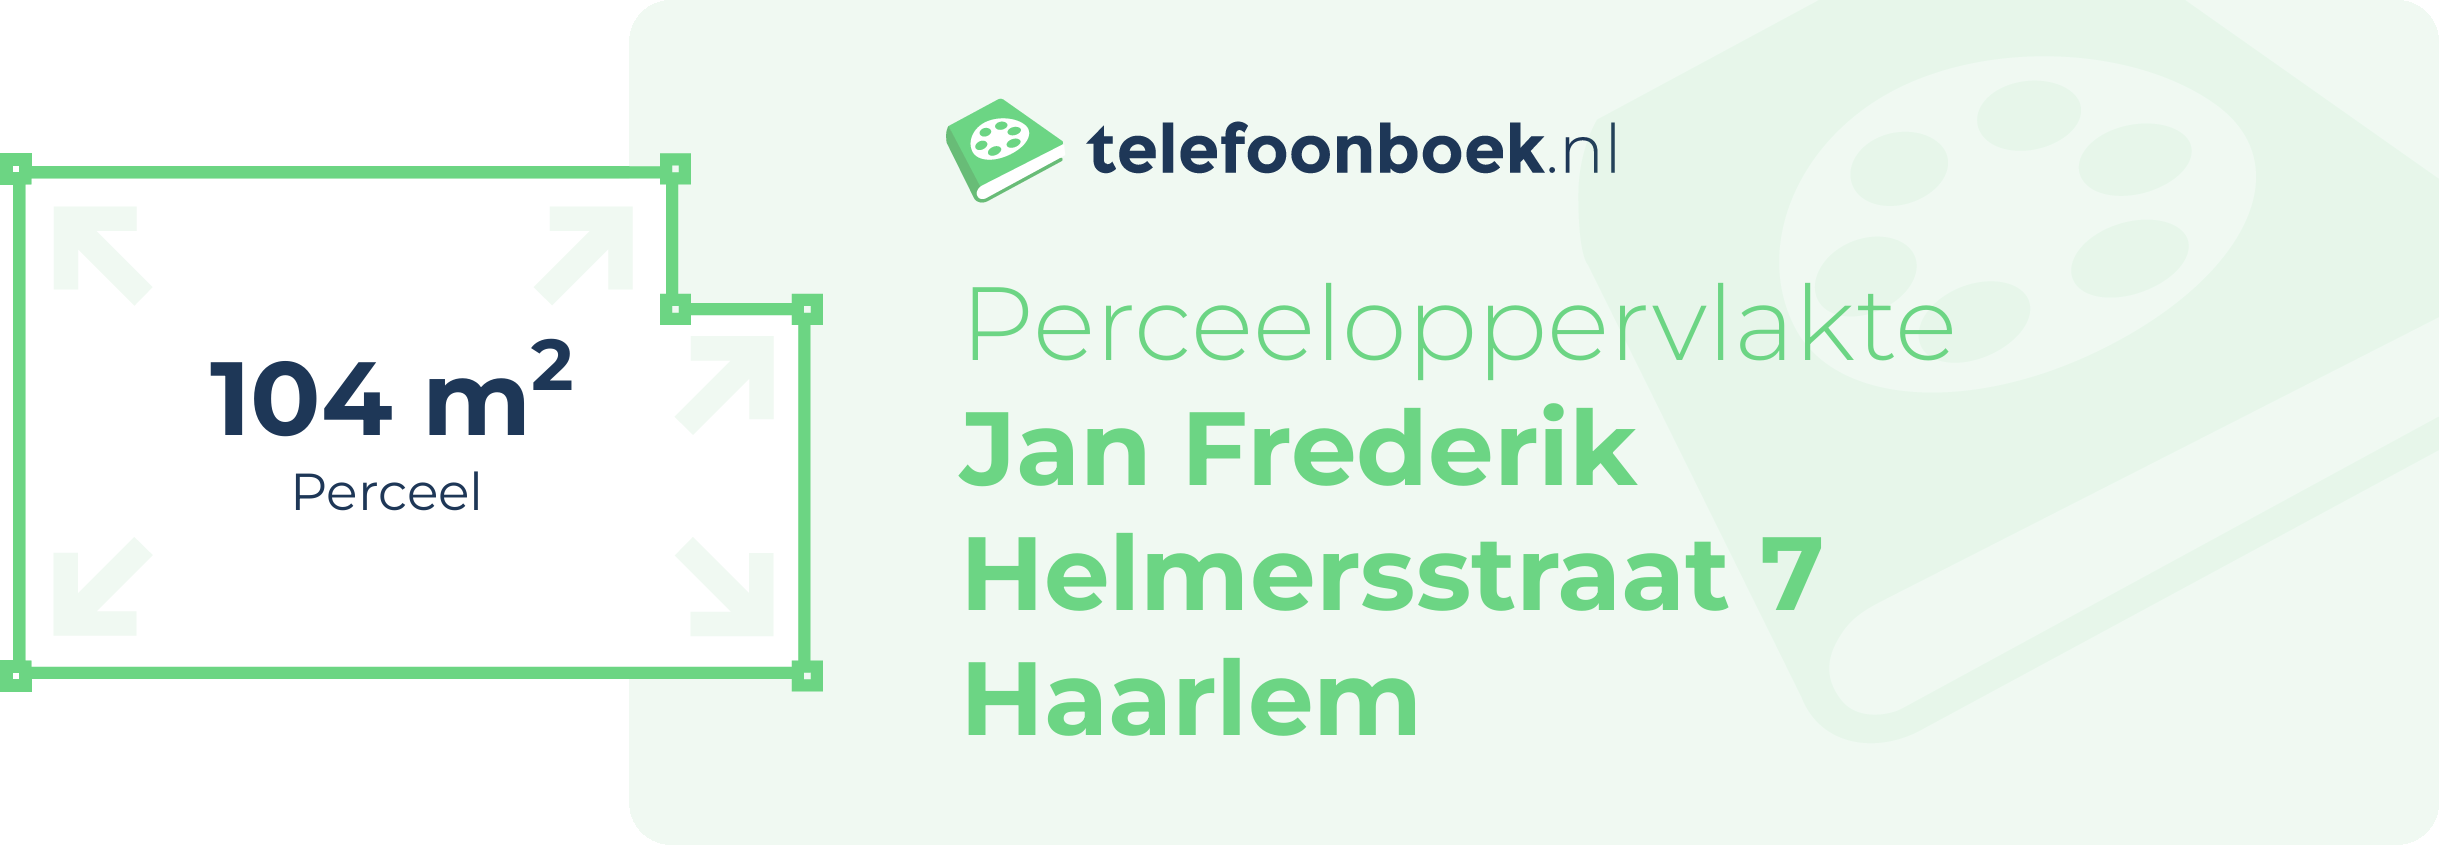 Perceeloppervlakte Jan Frederik Helmersstraat 7 Haarlem